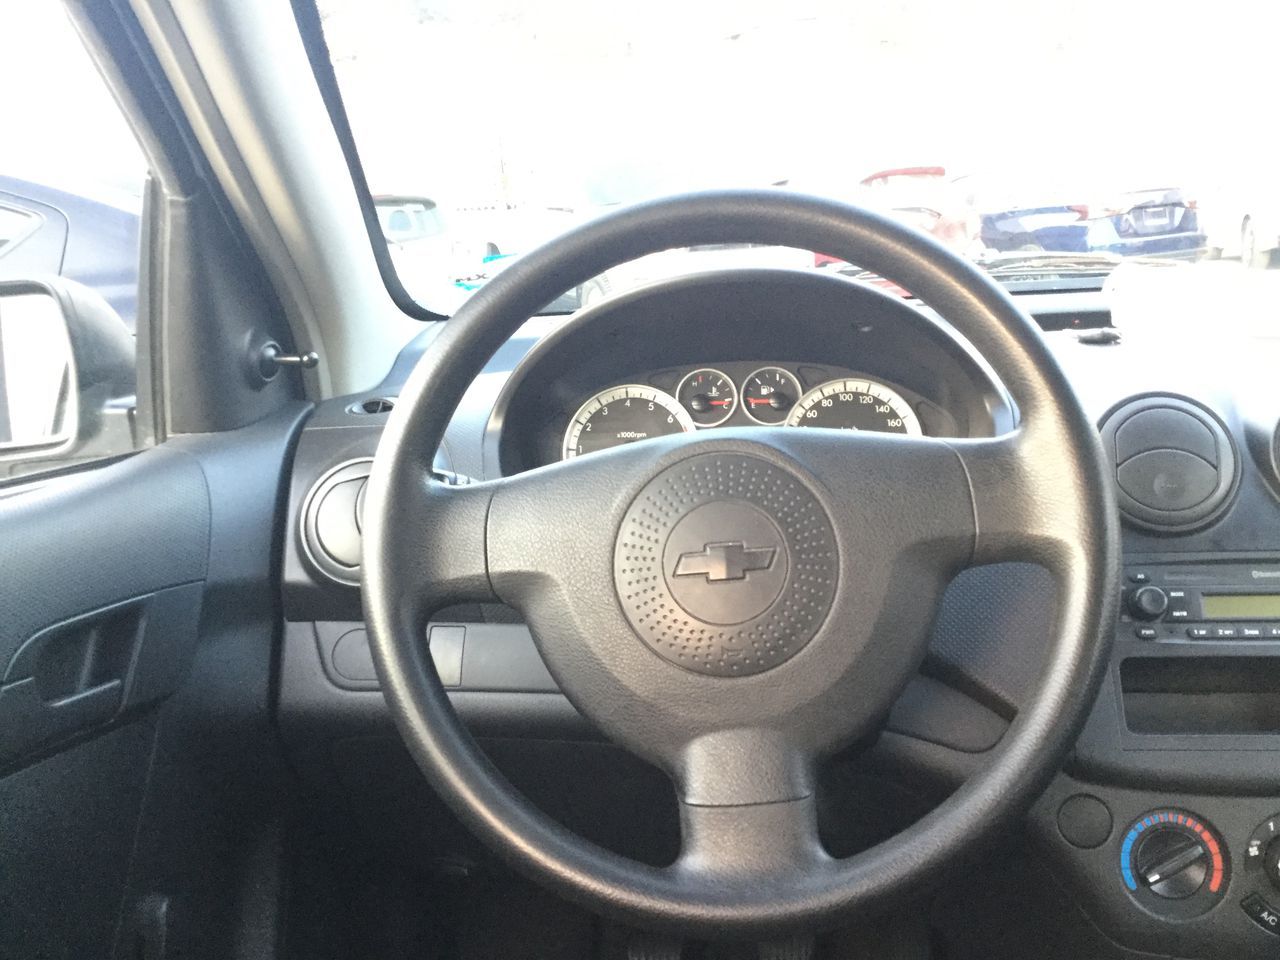 Chevrolet Aveo 2017